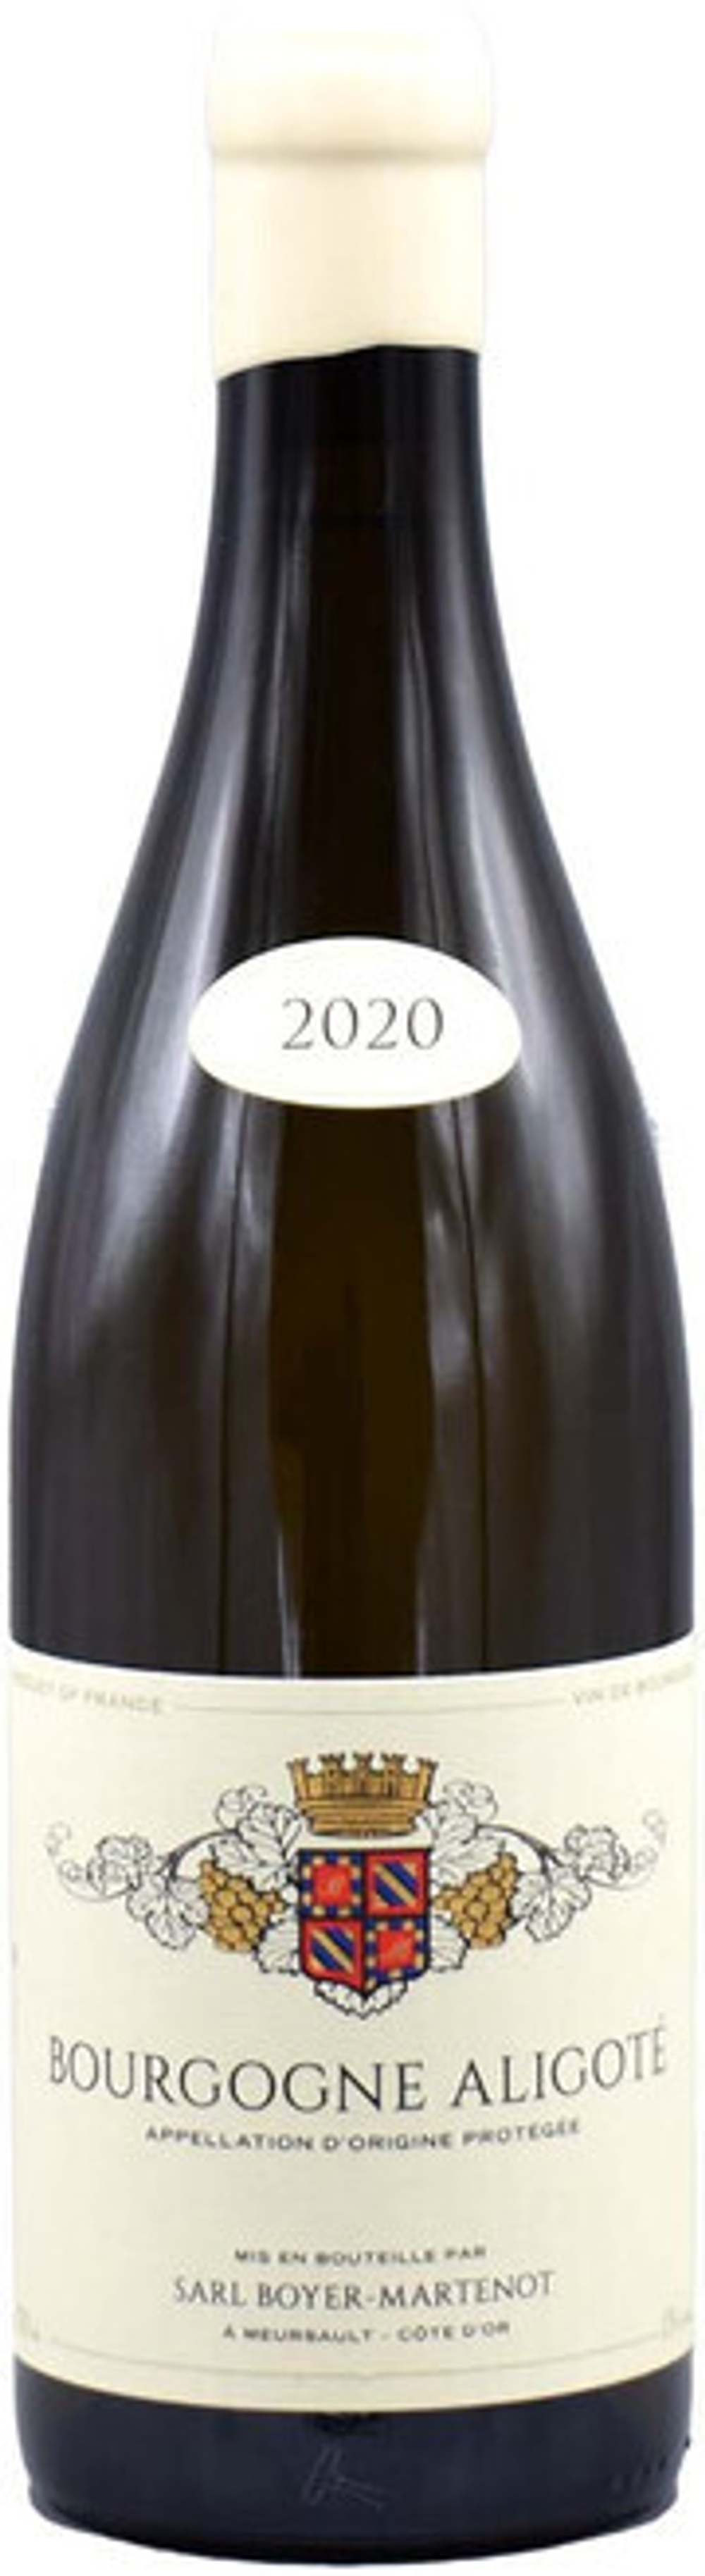 Вино Yves Boyer-Martenot Bourgogne Blanc AOC Aligote, 0,75 л